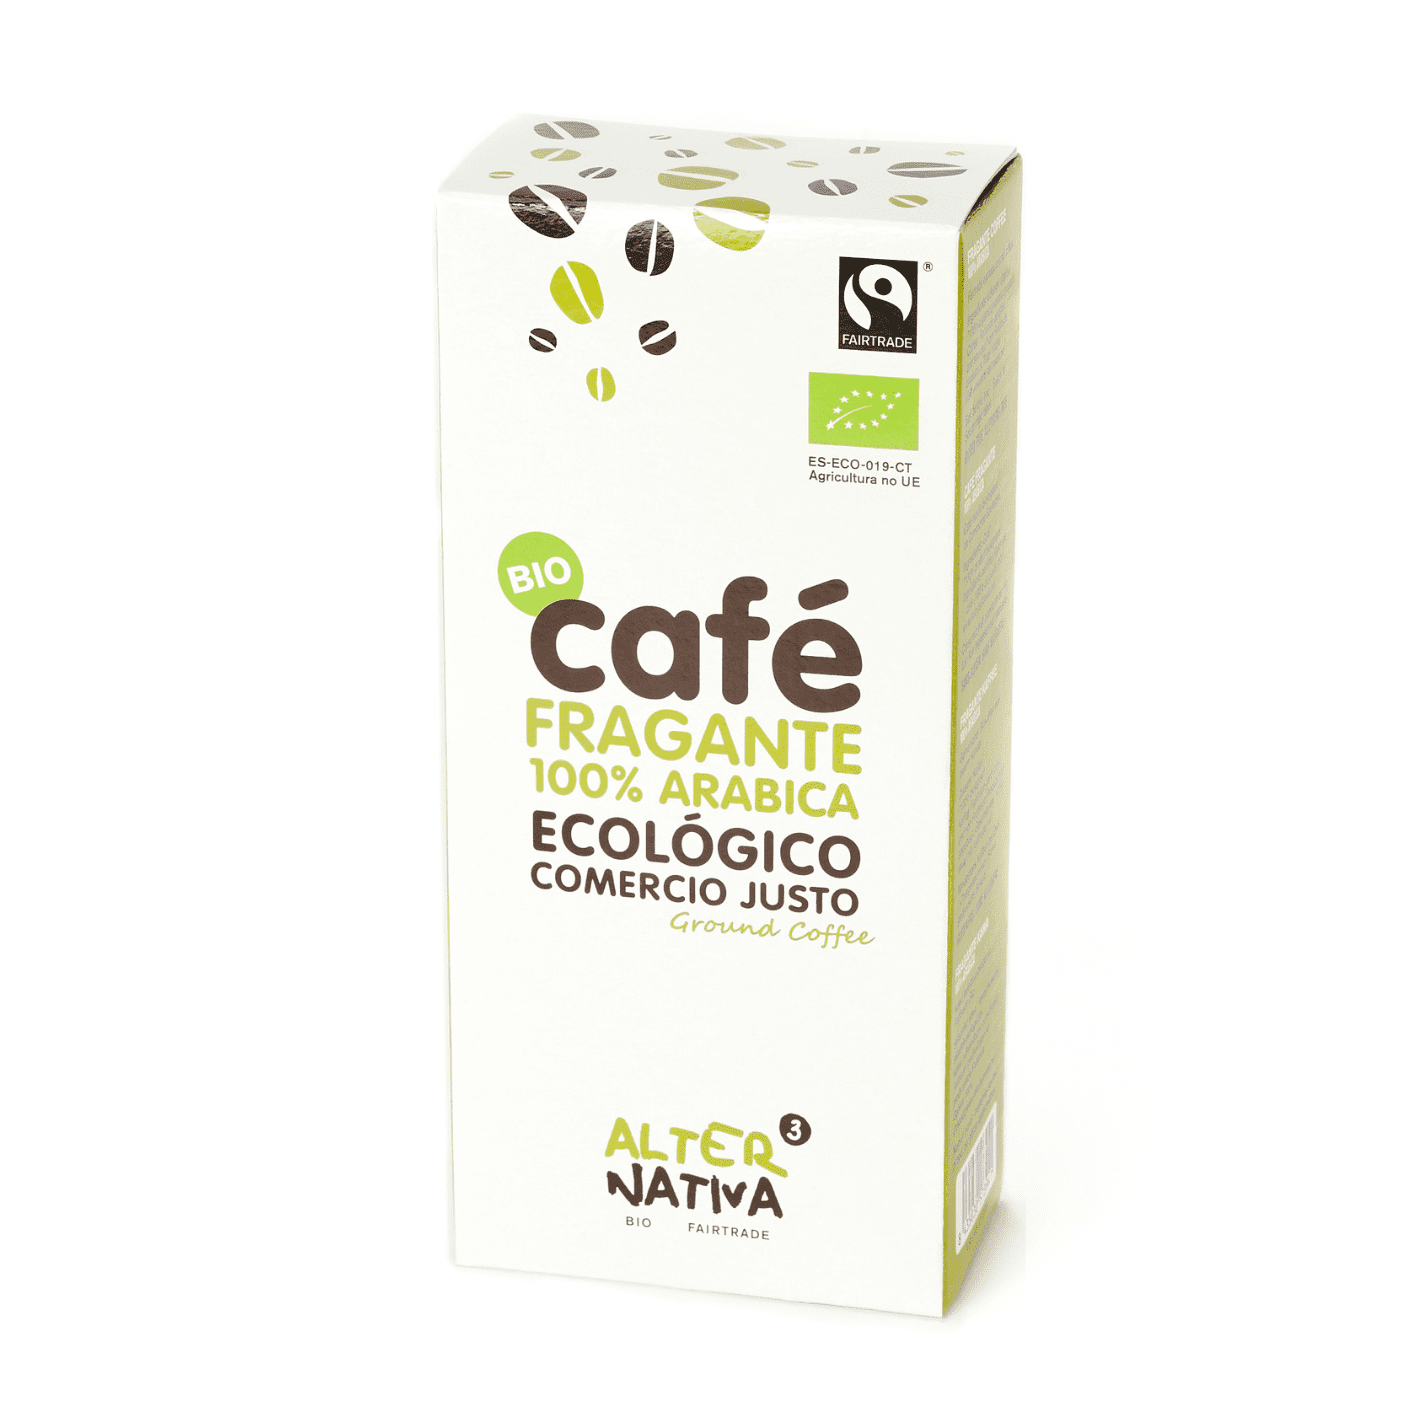 Monodosis E.S.E. de Café Intenso Bio Fairtrade 7g - AlterNativa3